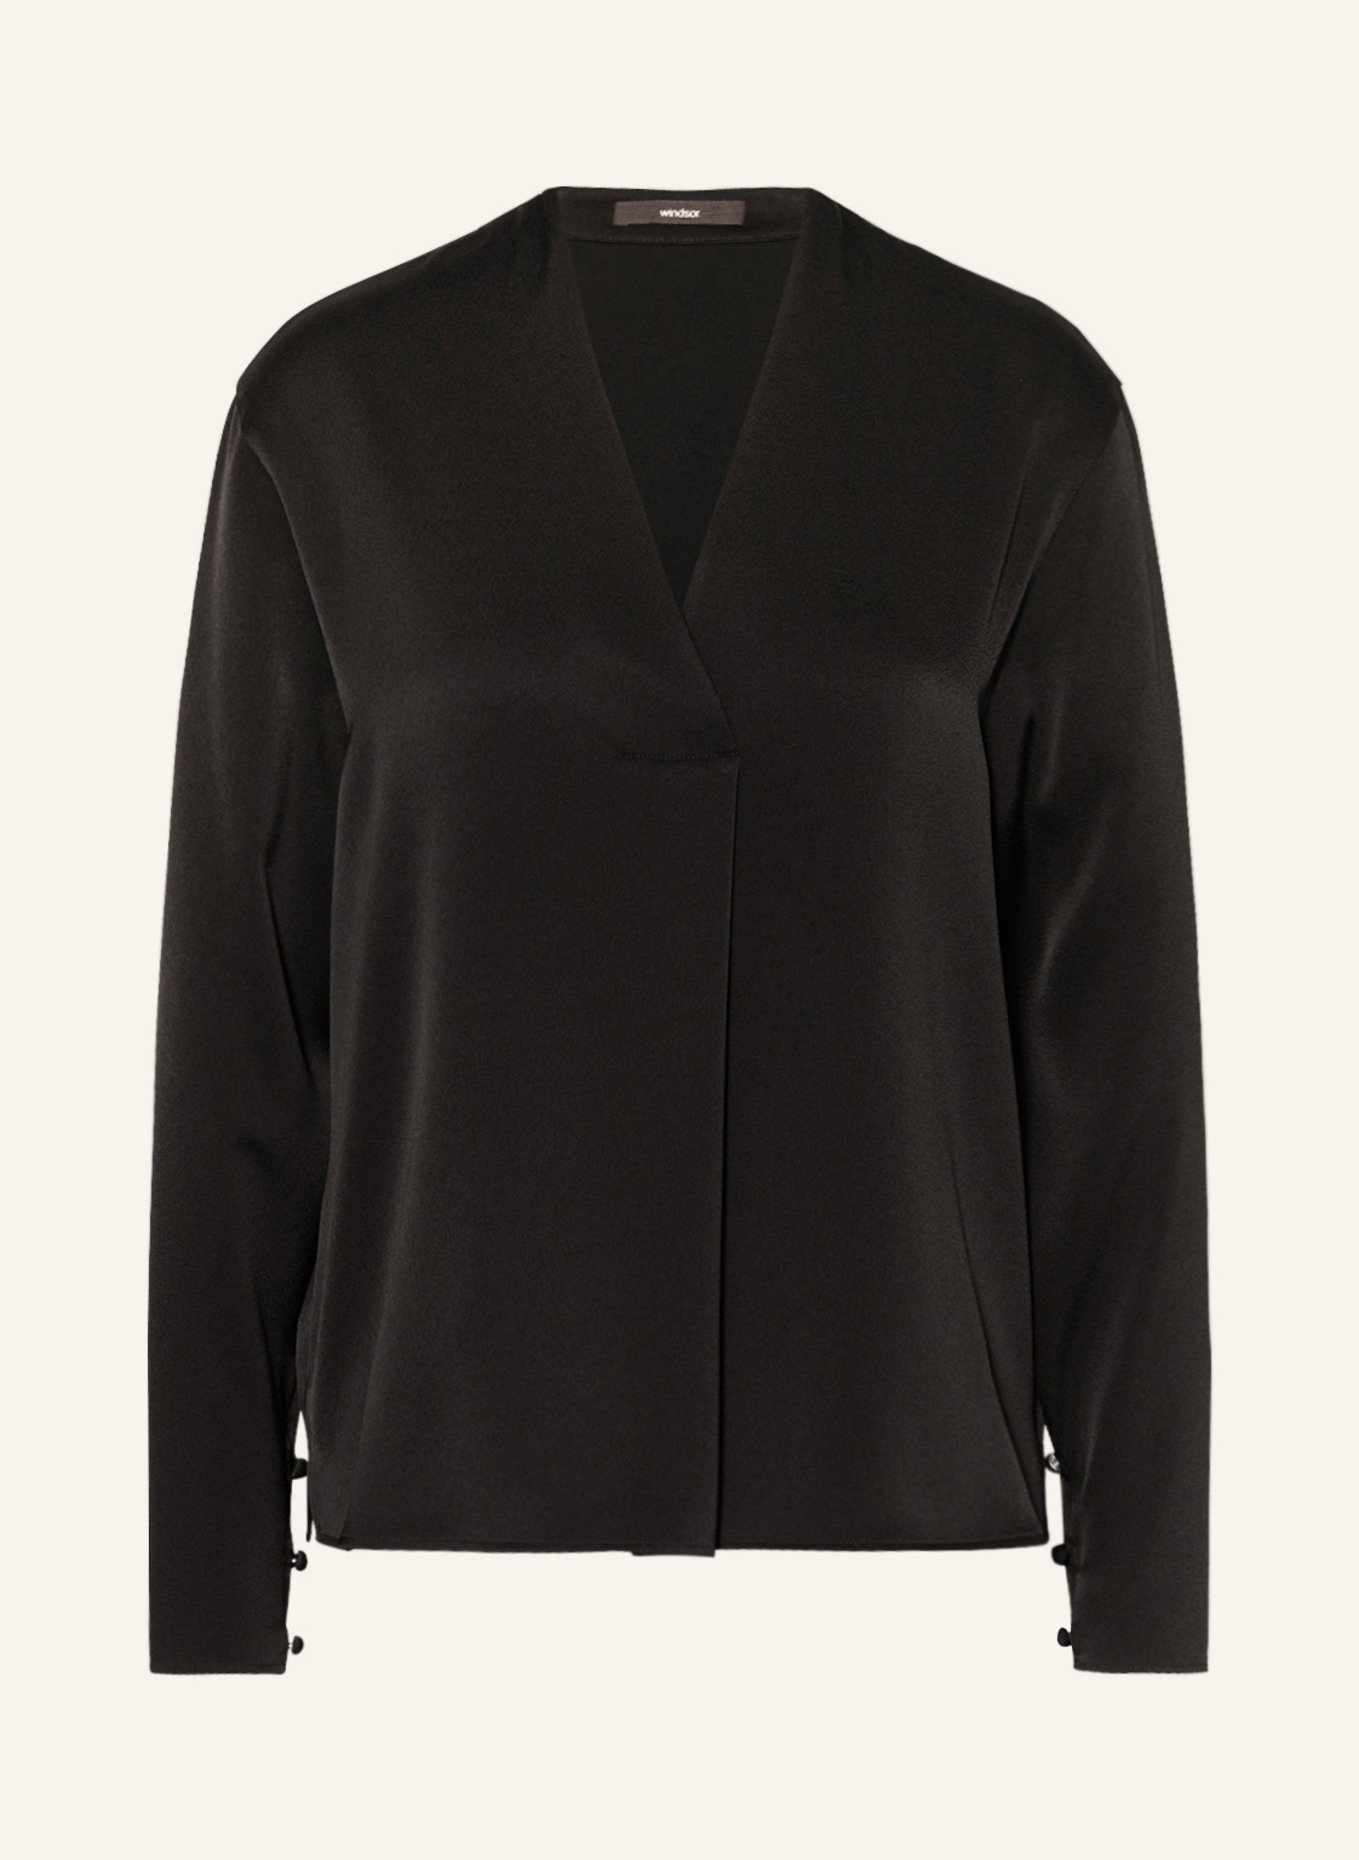 windsor. Shirt blouse in satin, Color: BLACK (Image 1)